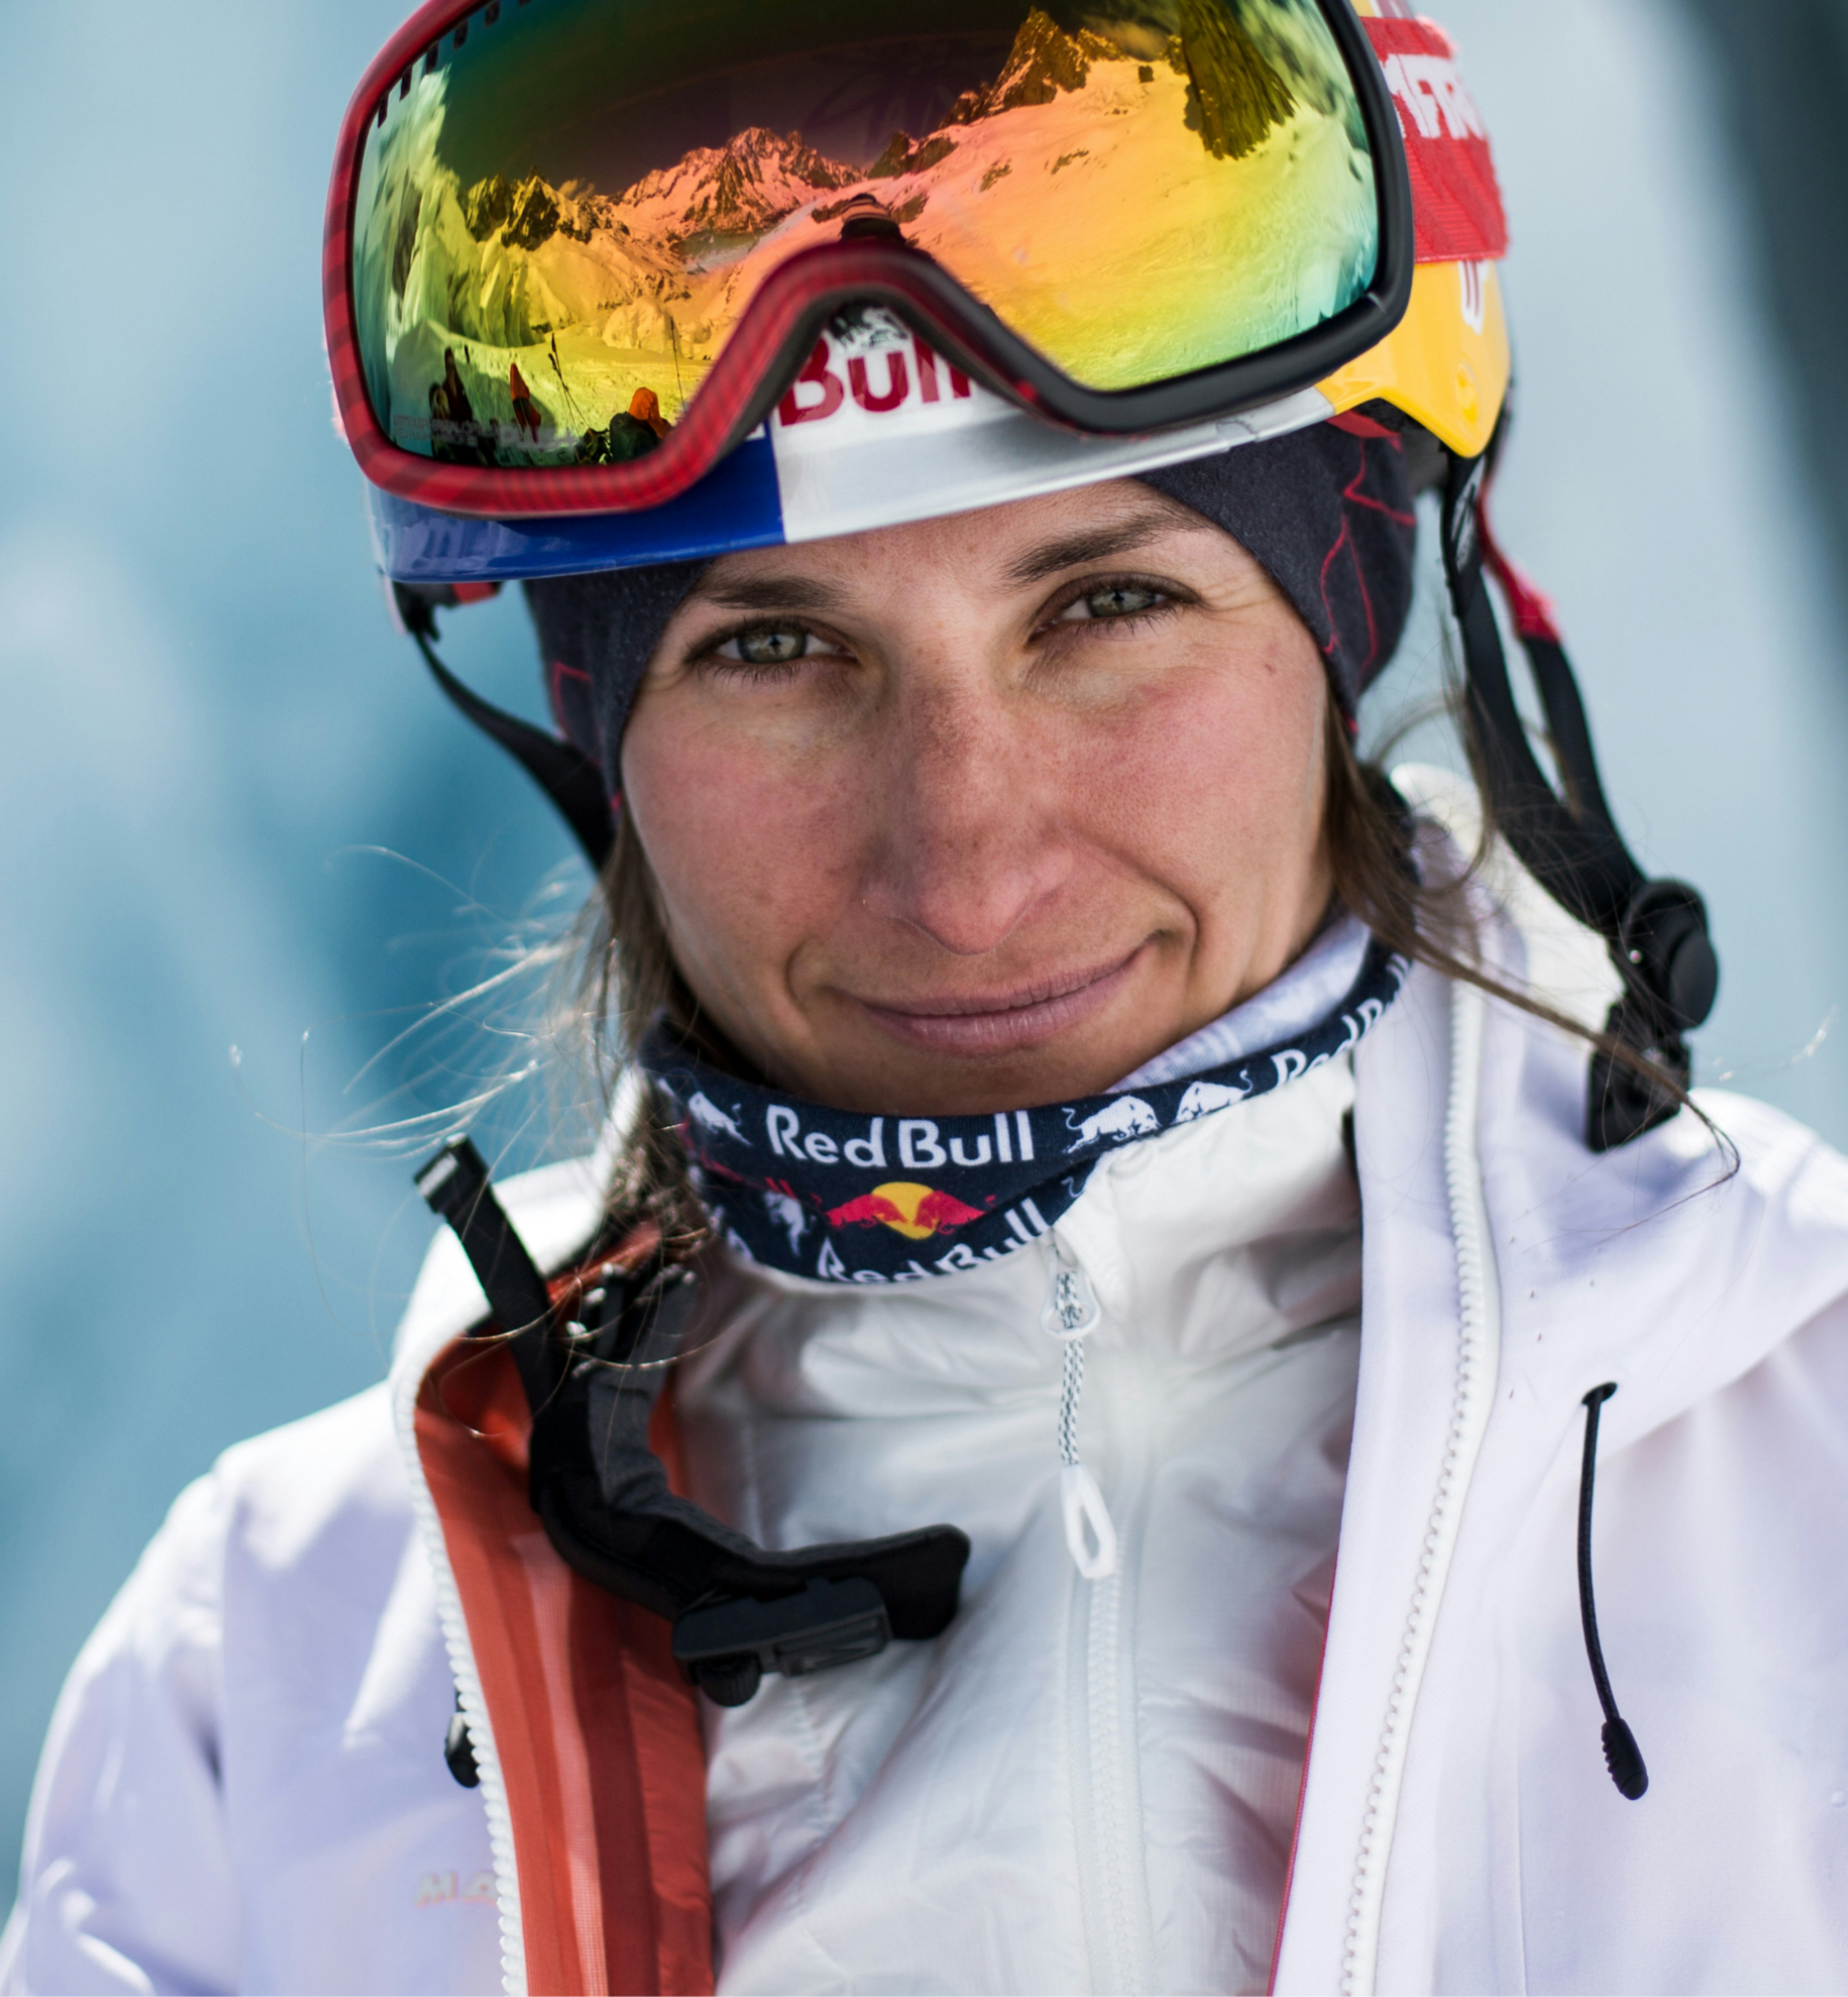 Nadine Wallner fährt Ski in Mammut Ausrüstung